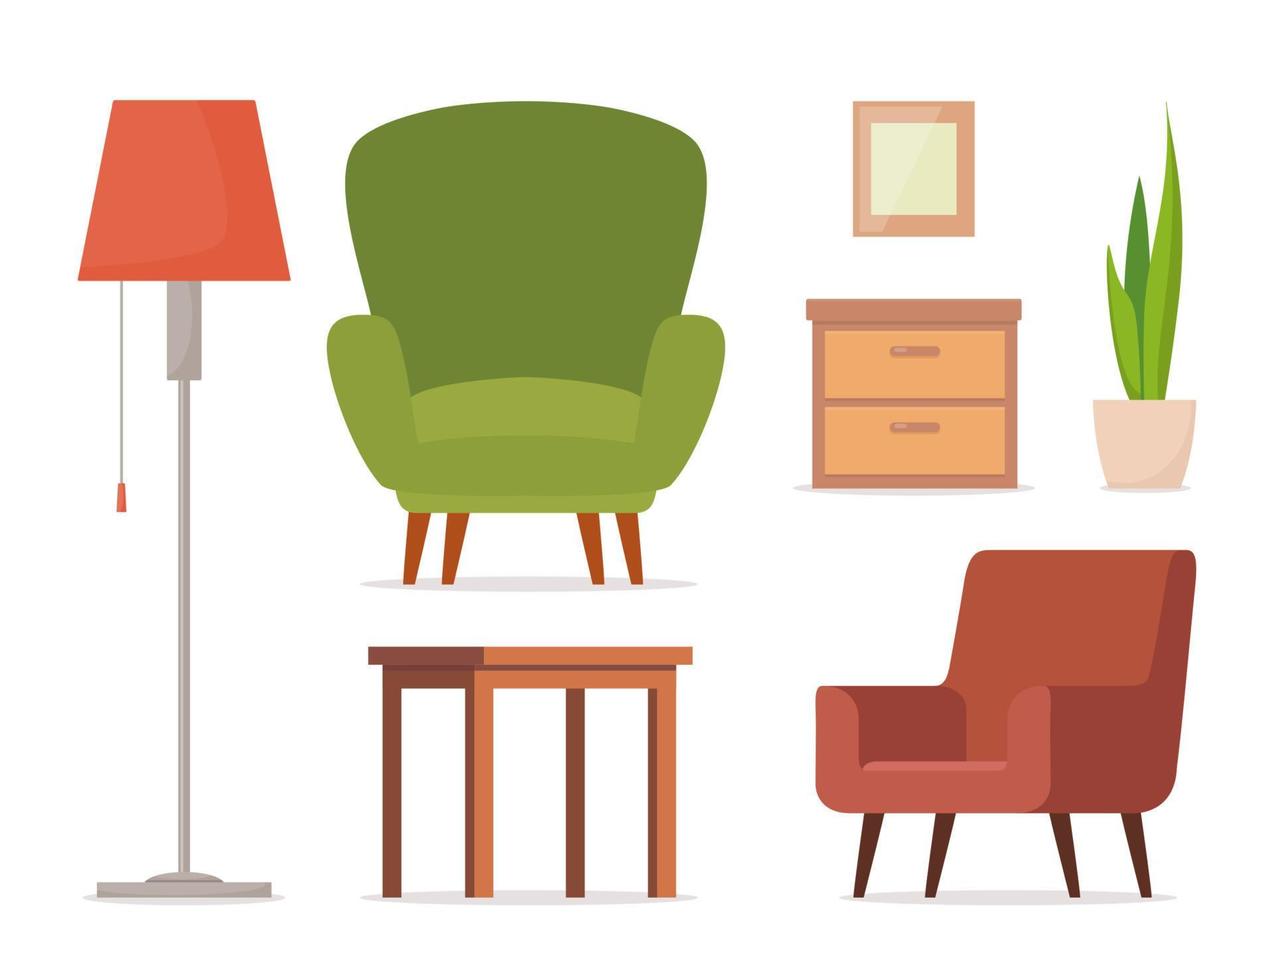 meubilair reeks voor leven kamers. stoel, tafel, lamp, kluisje, ingemaakt fabriek. reeks voor leven kamer interieur. vector illustratie.